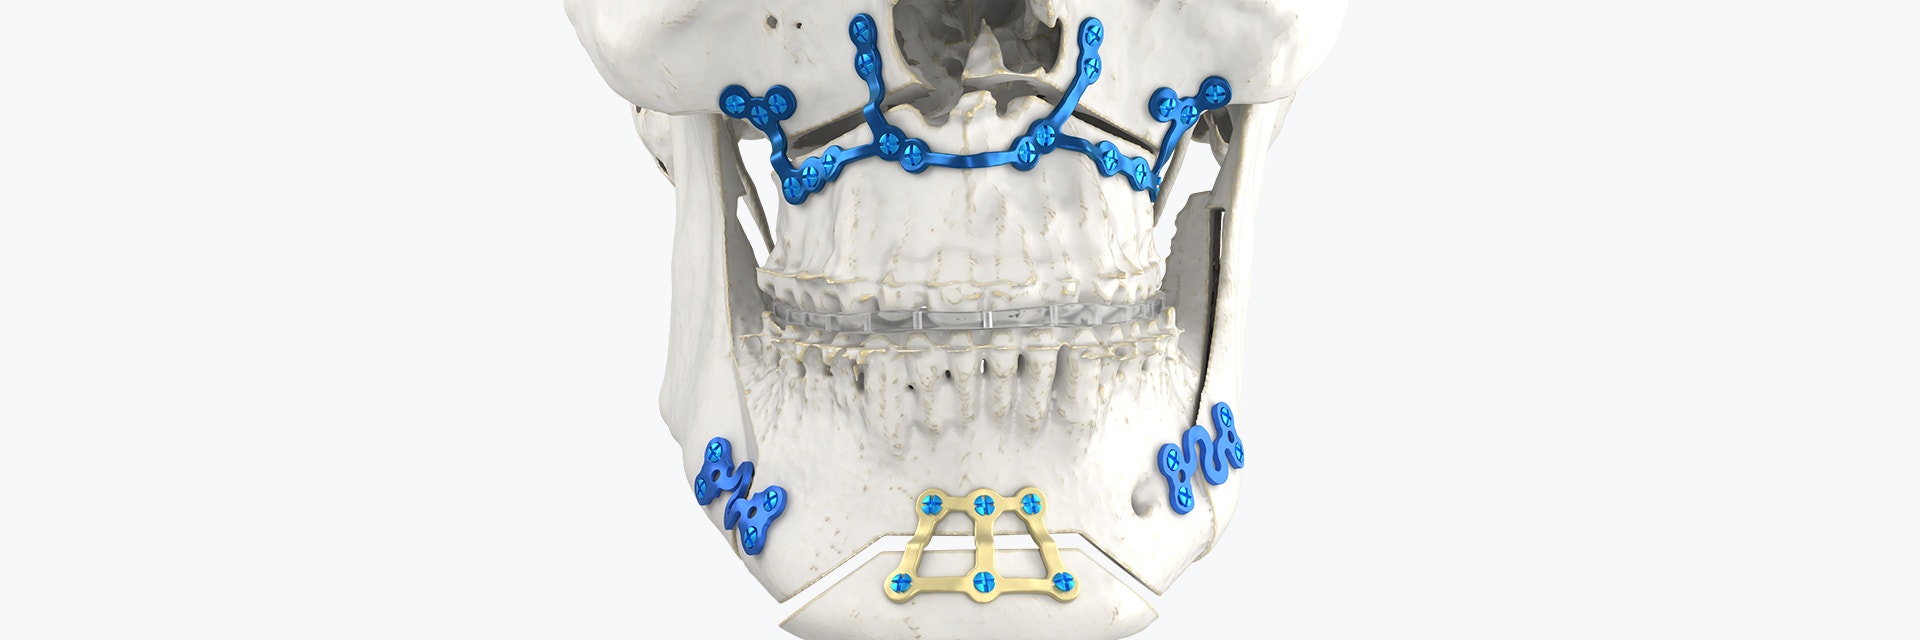 顎矯正スプリントと標準プレートの結合を示す頭蓋骨の顎